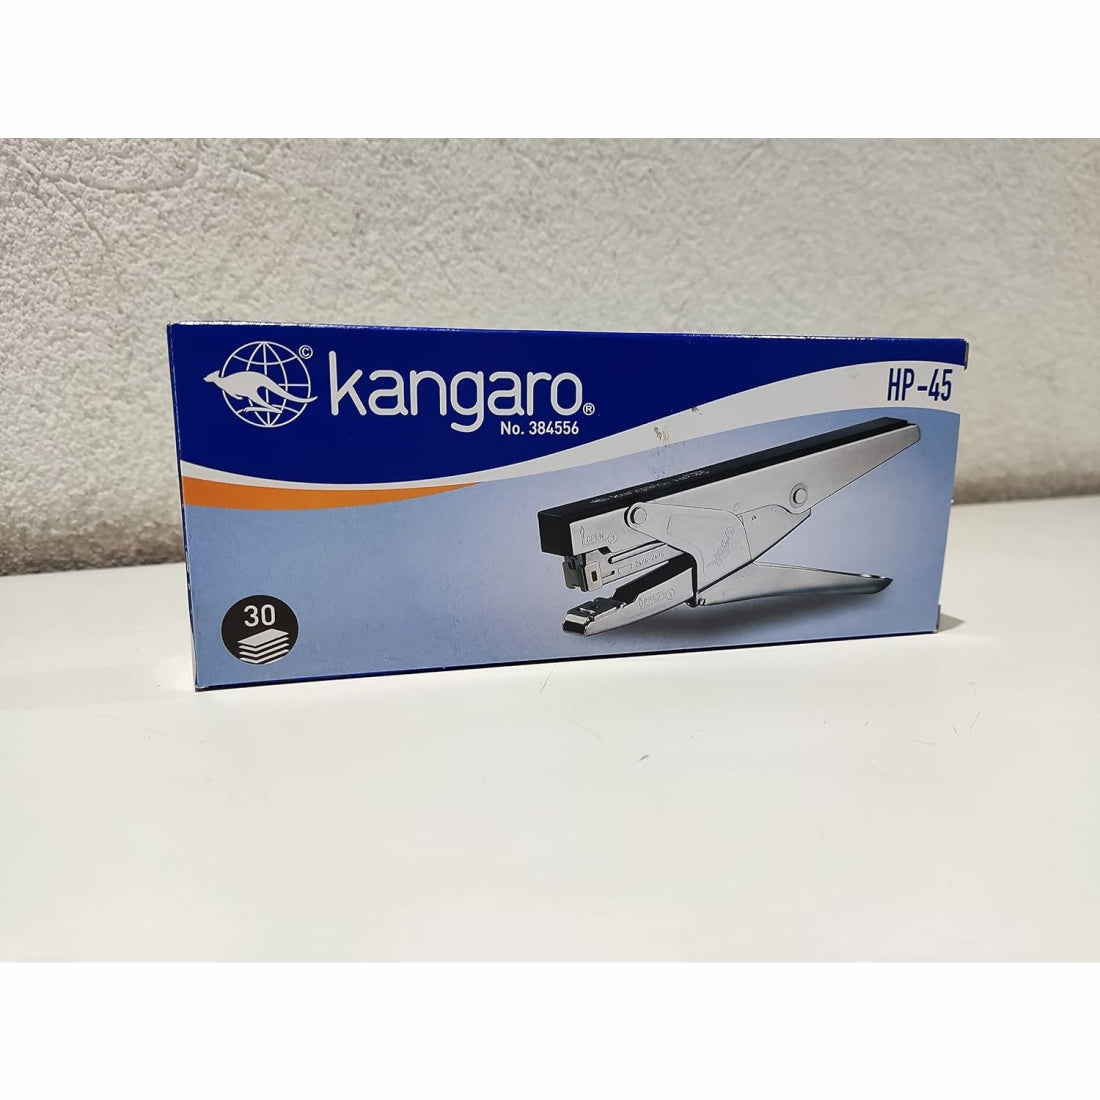 Kangaro HP-45 All Metal Stapler